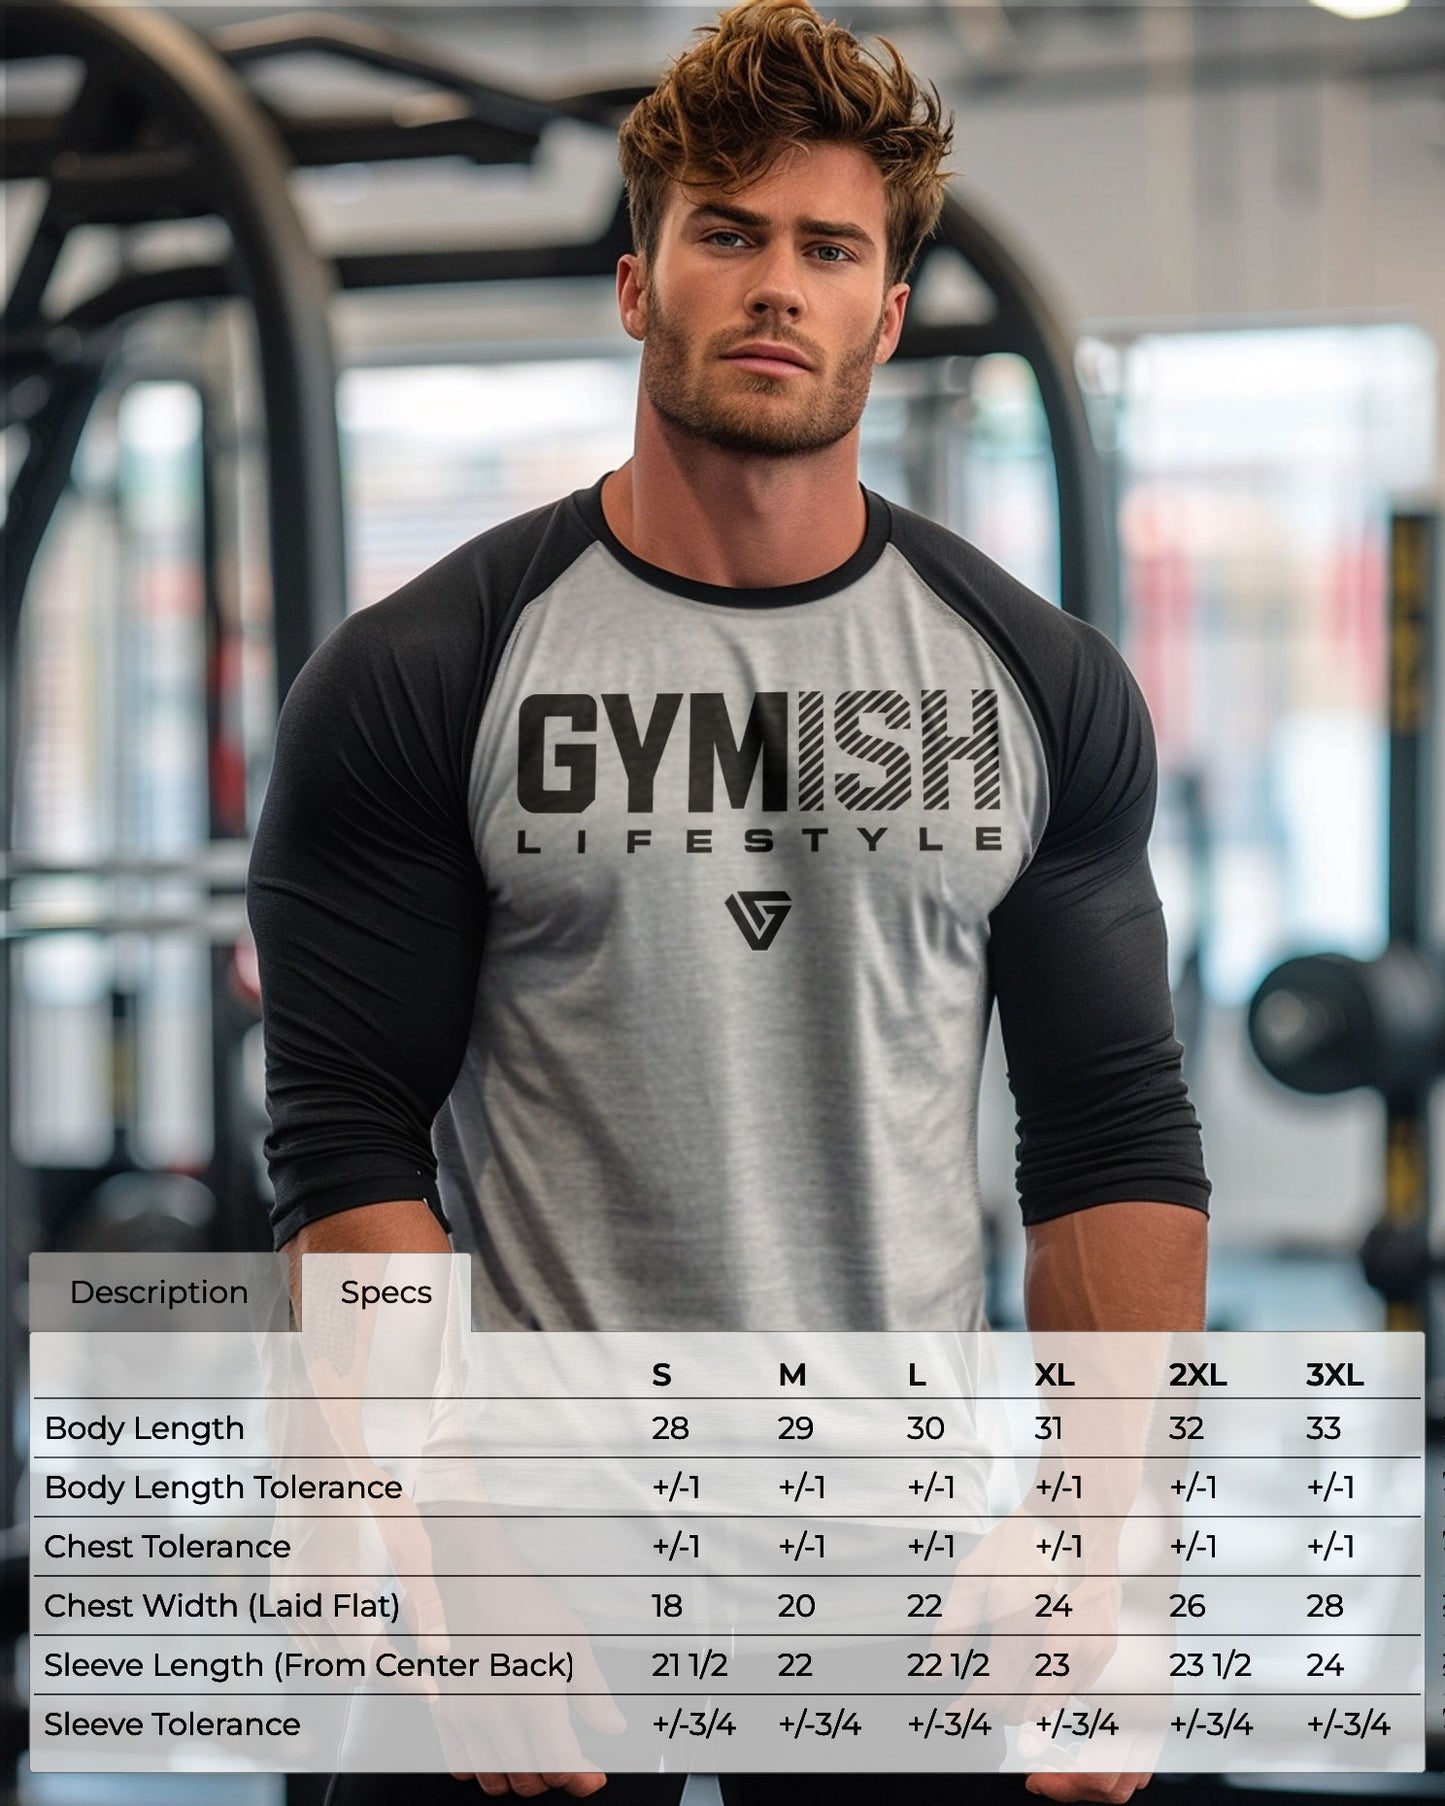 01- RAGLAN Deadlift Workout Gym T-Shirt for Men